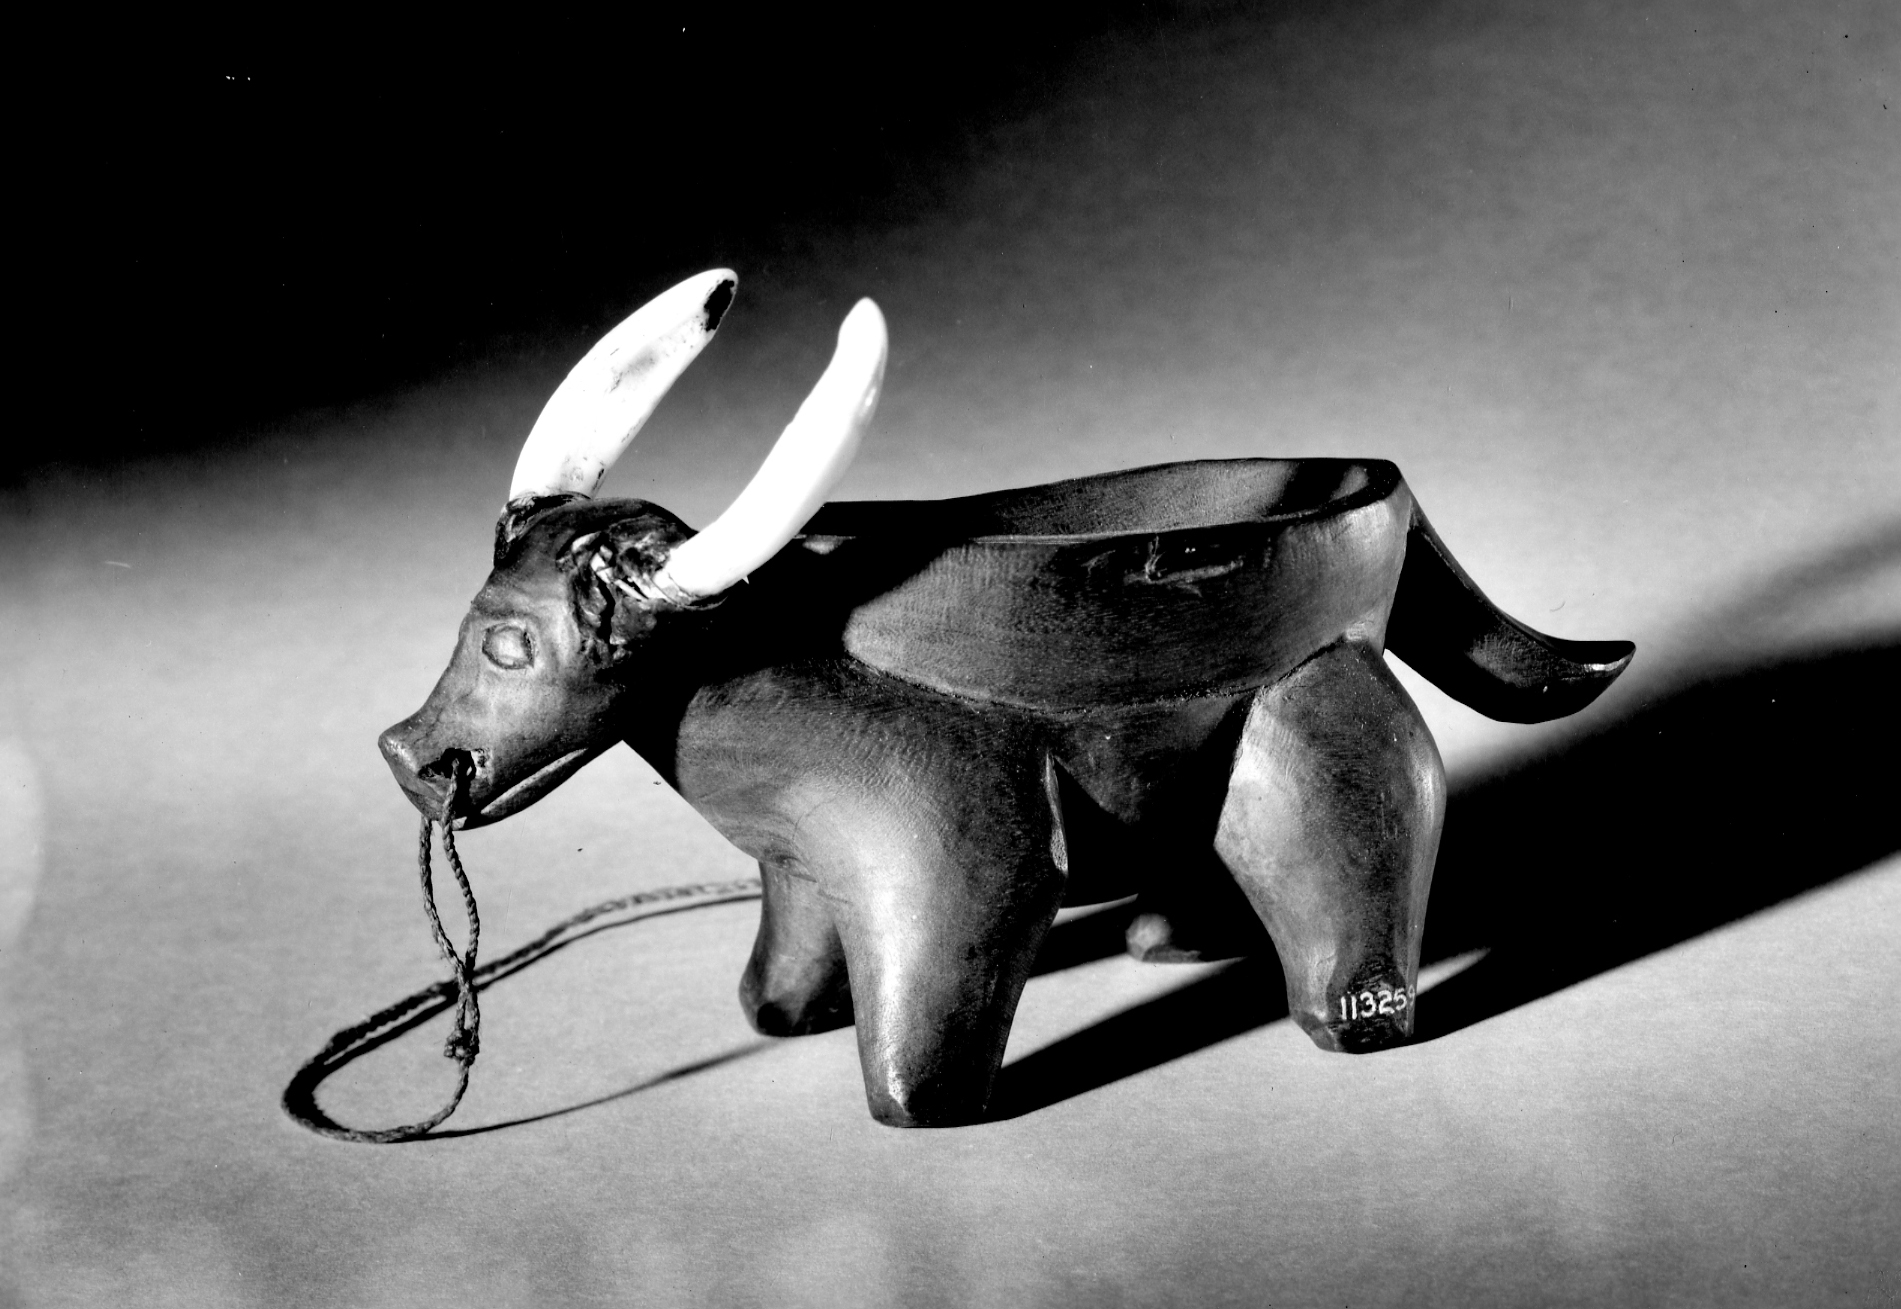 Bowl of light wood; rests upon carved caribou-like animal figure. Hog teeth for horns  